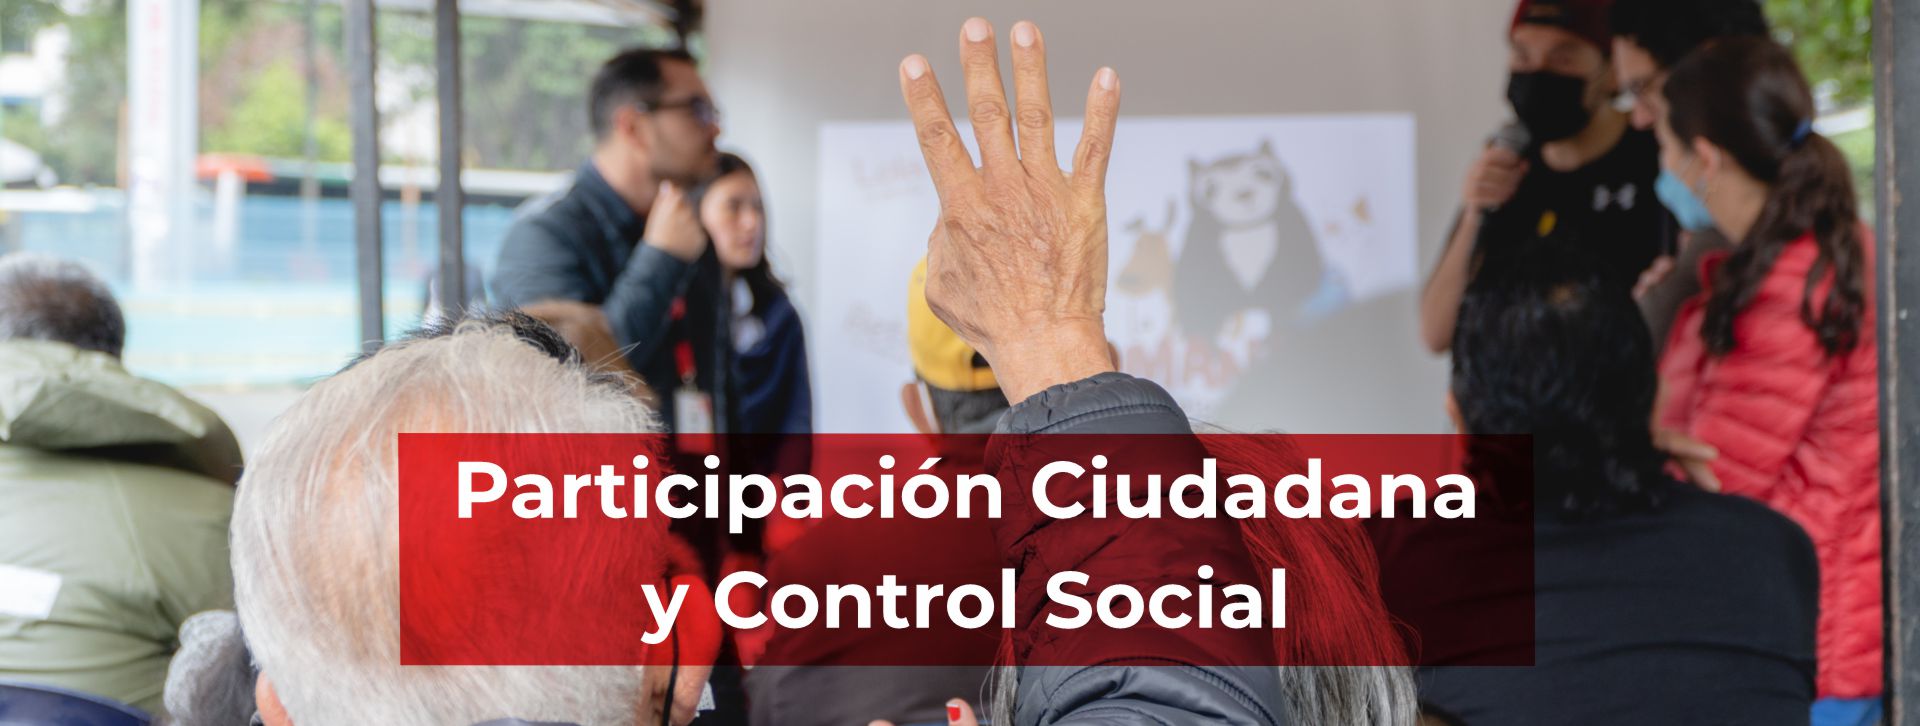 banner participación ciudadana y control social